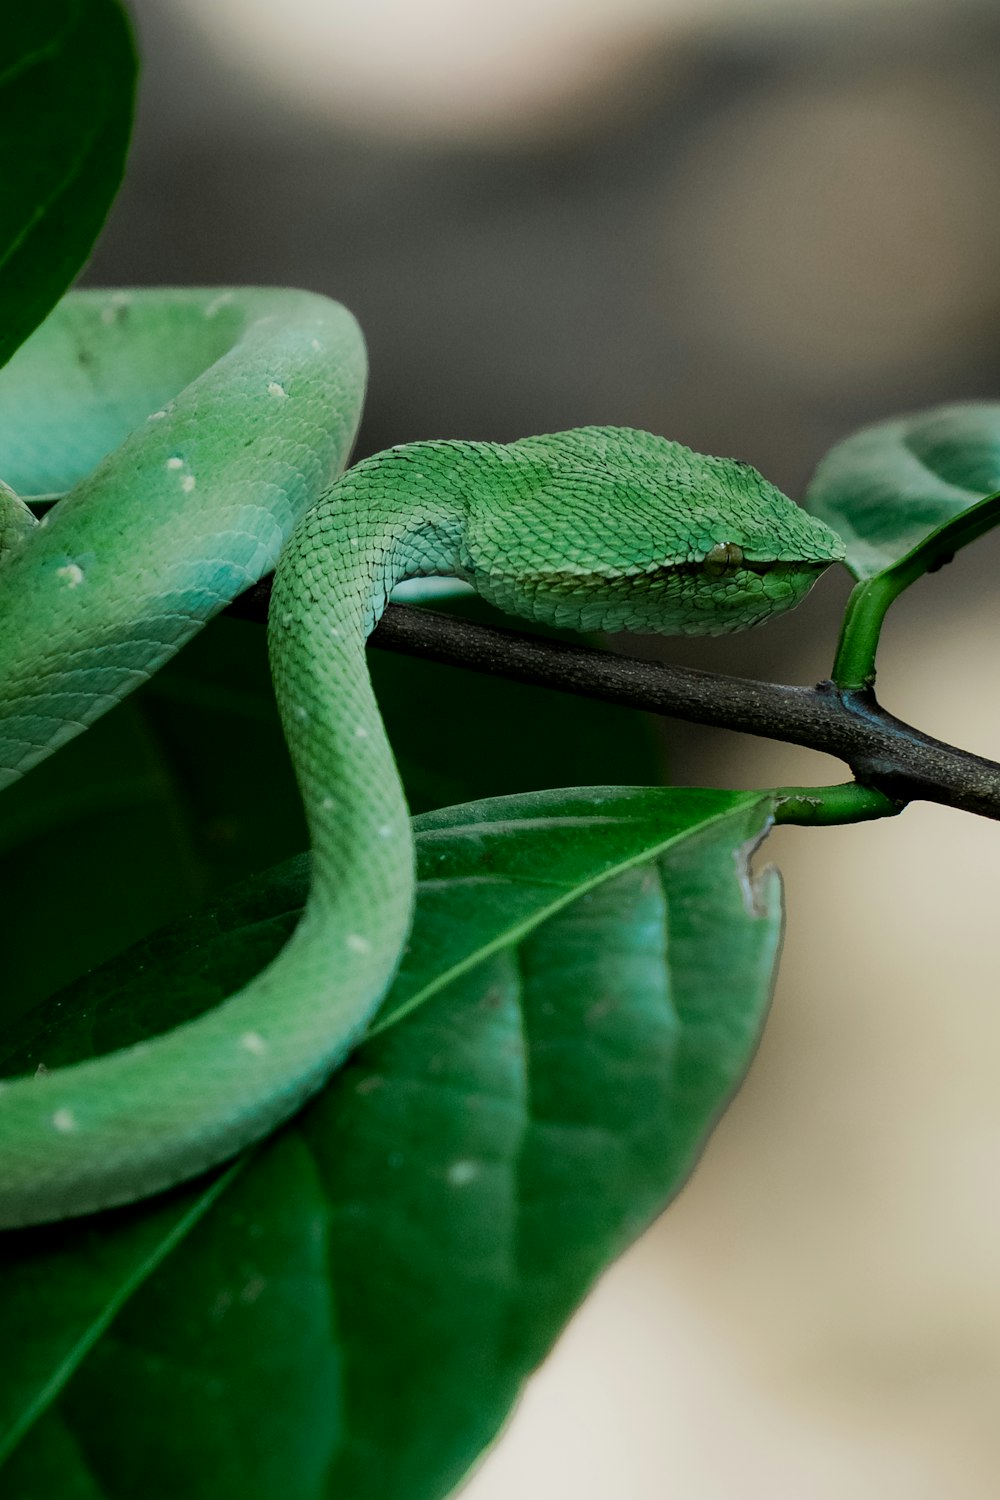 Un serpente verde seduto sulla cima di una foglia